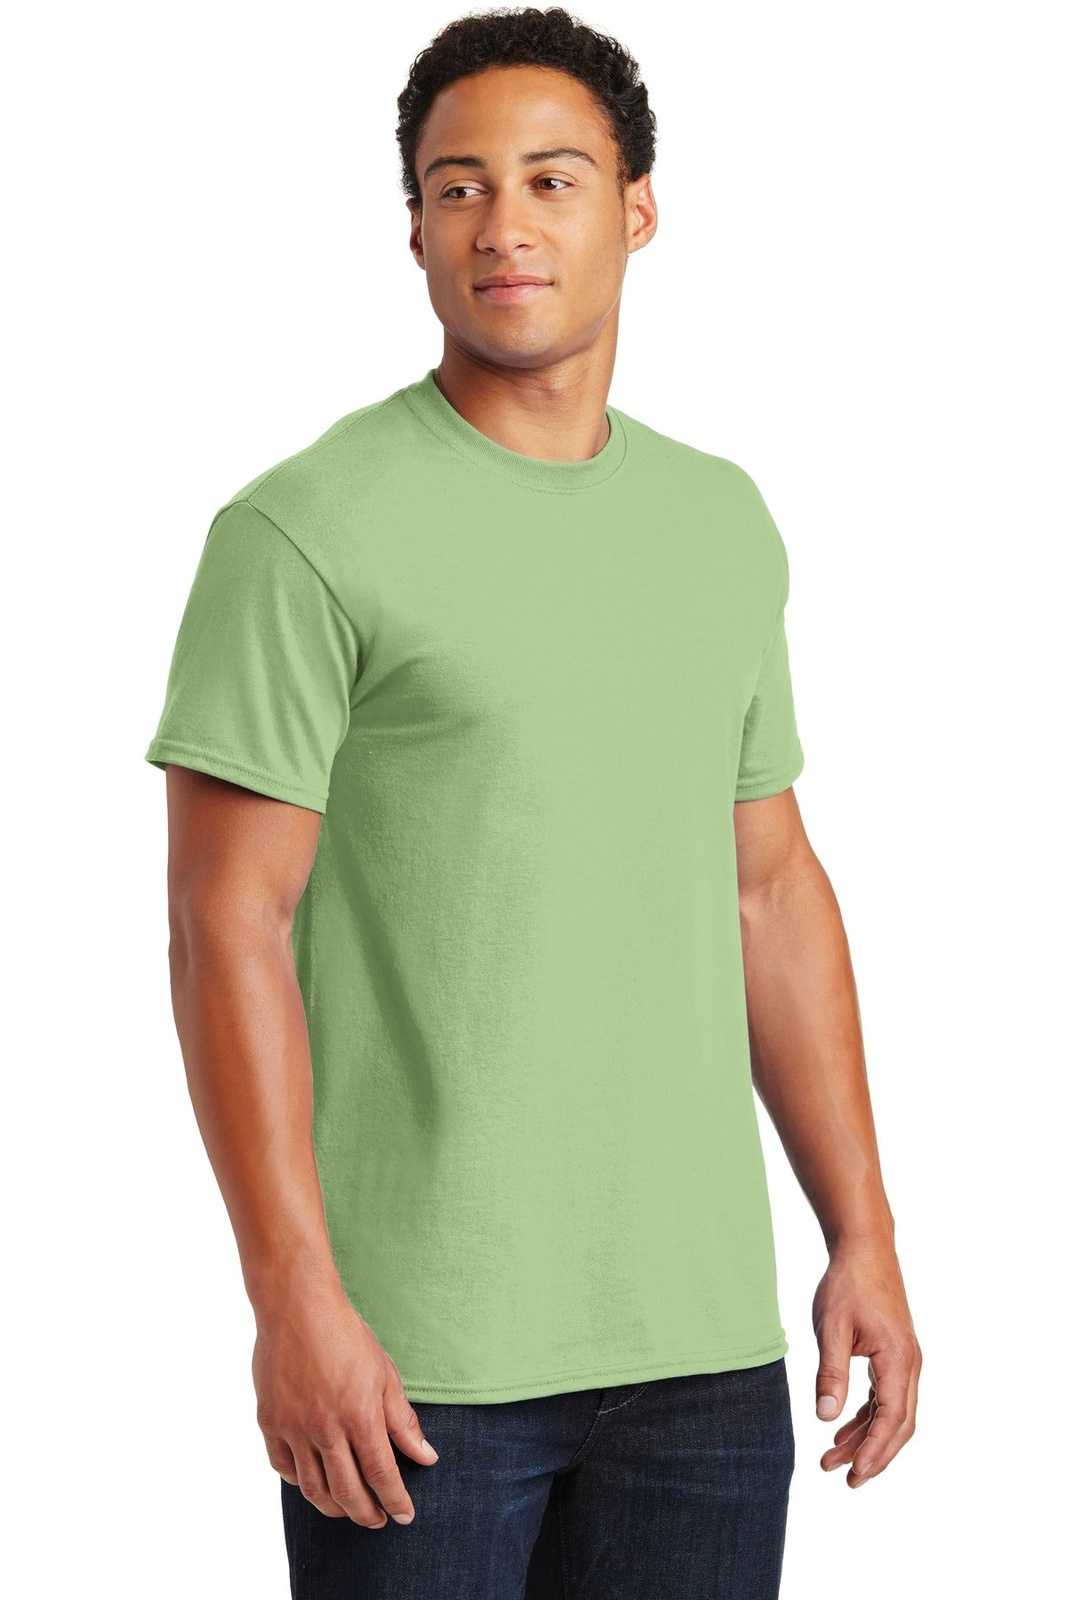 Gildan 2000 Ultra Cotton 100% Cotton T-Shirt - Pistachio - HIT a Double